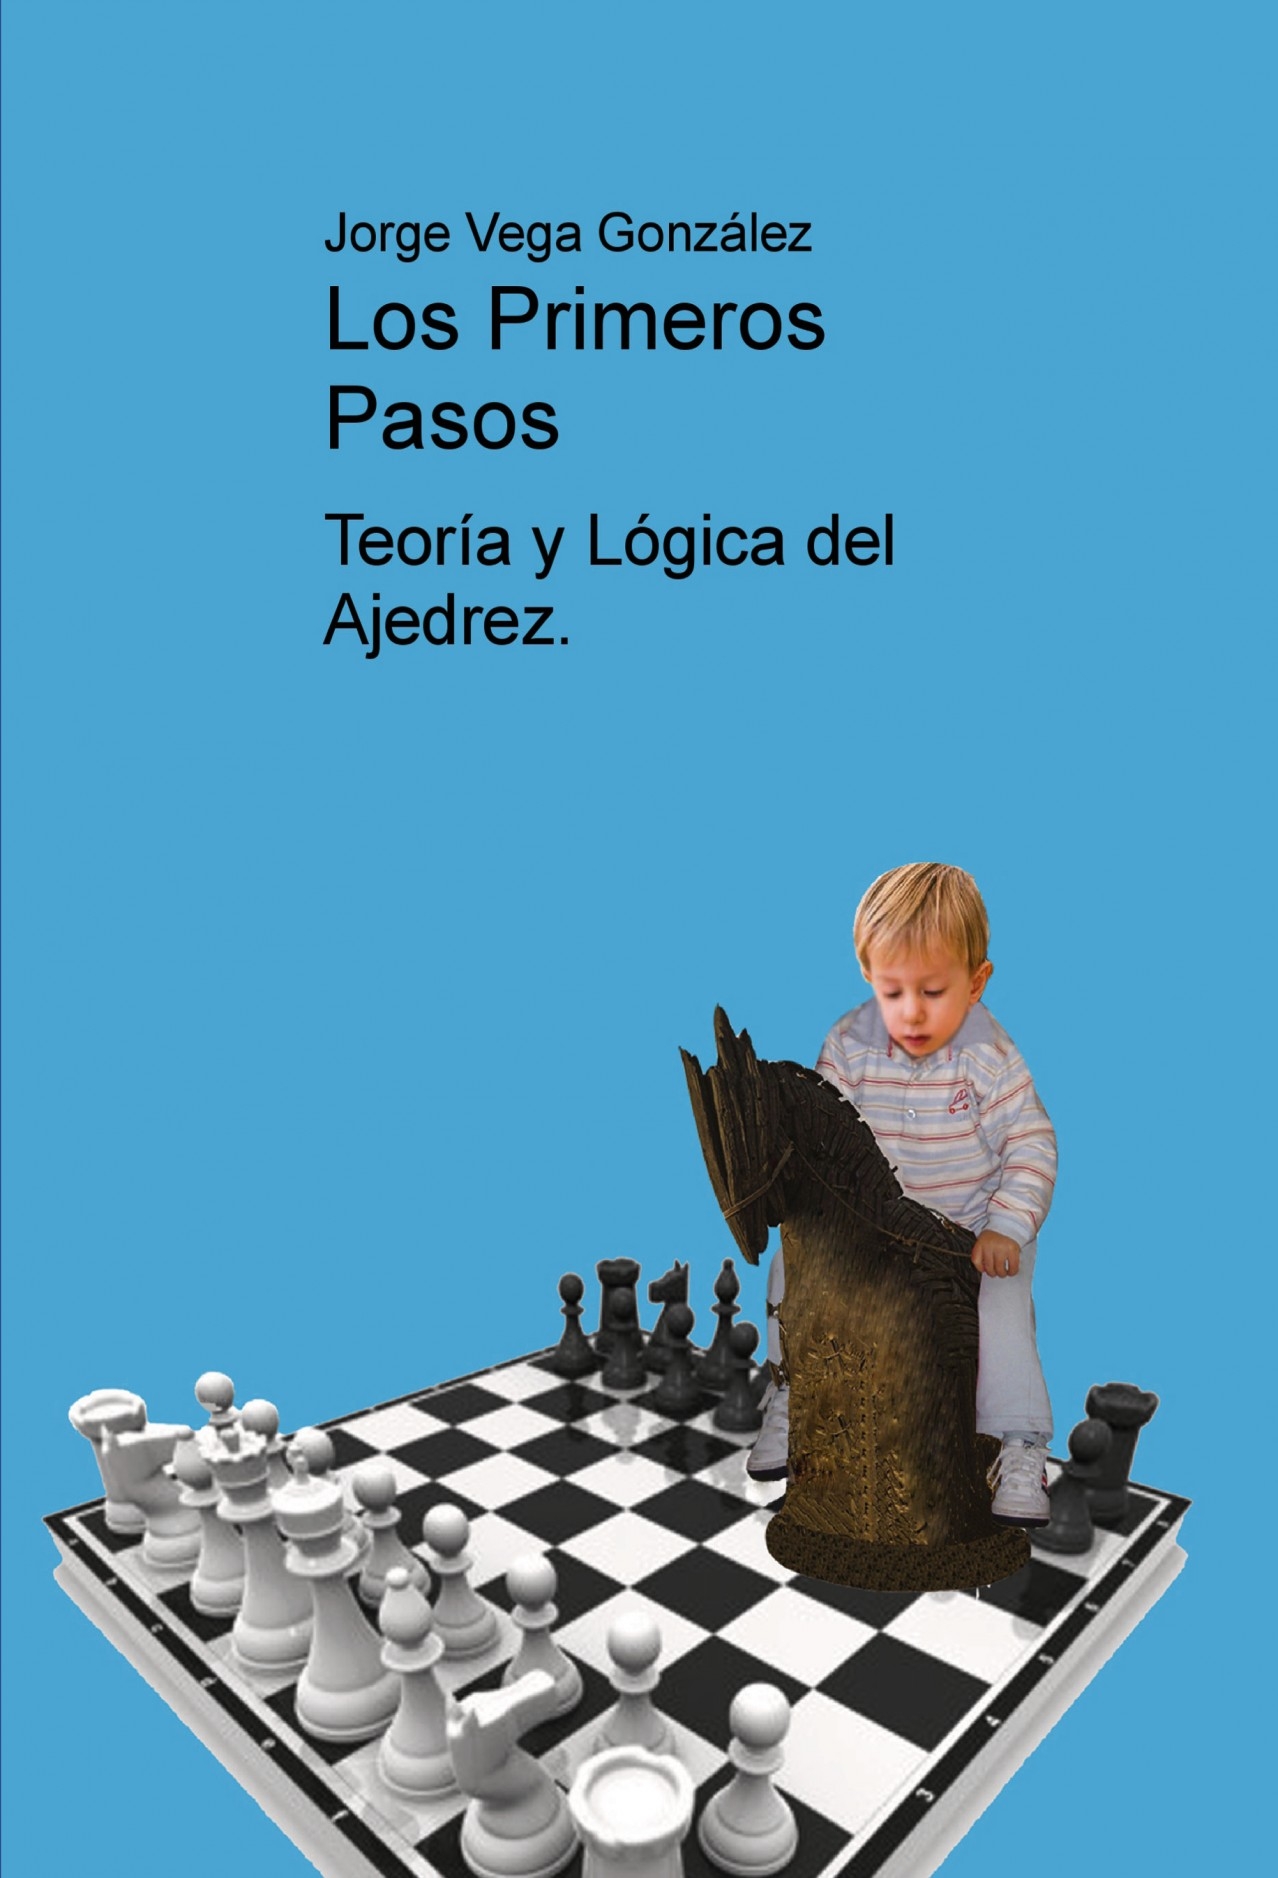 Ebook Los primeros pasos en el ajedrez